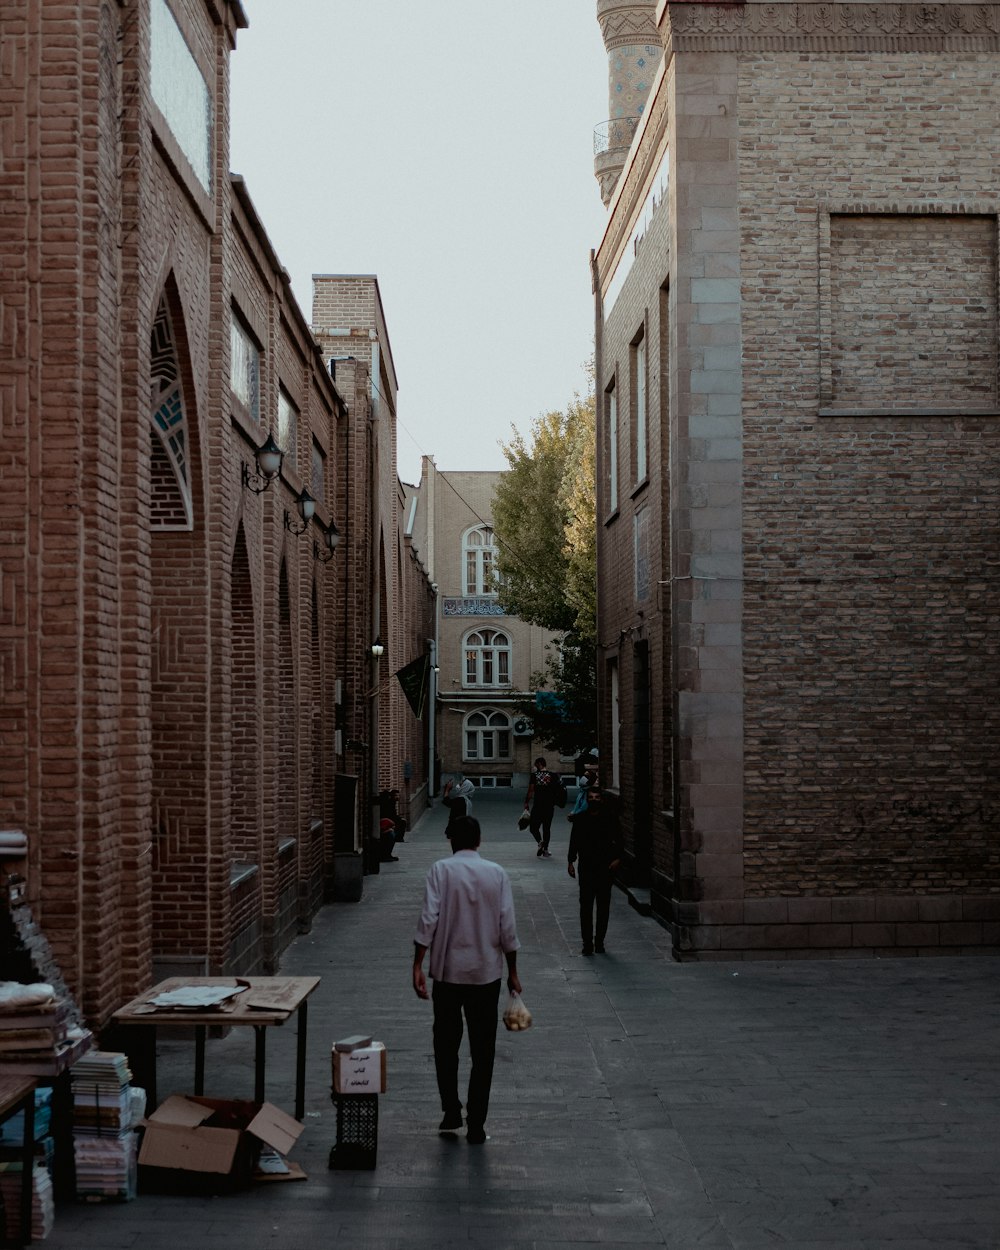 Un hombre caminando por una calle junto a altos edificios de ladrillo